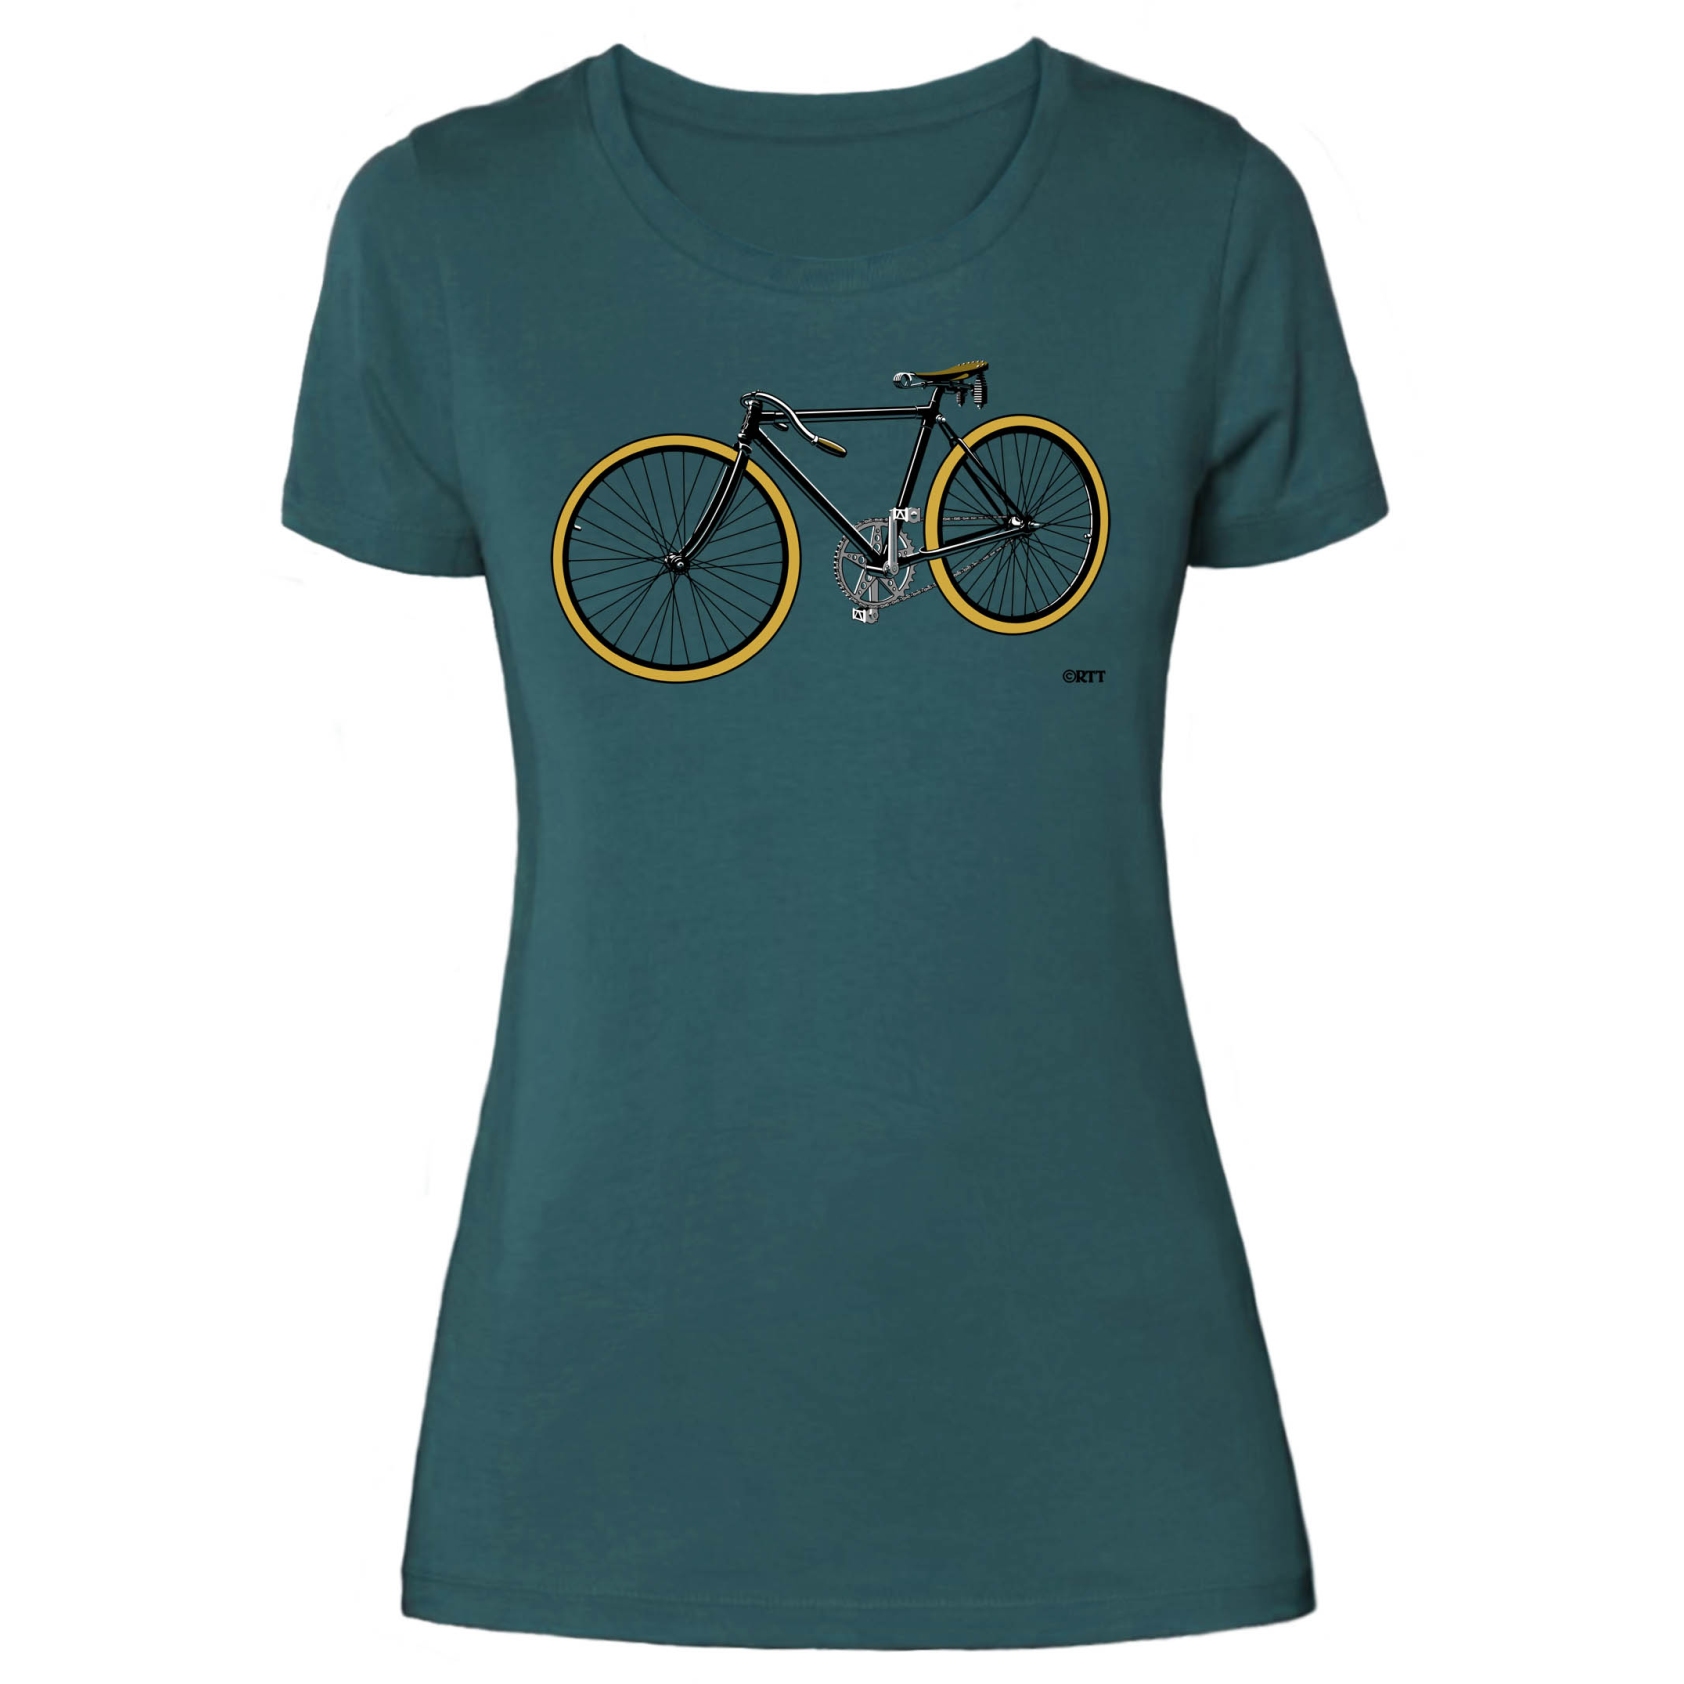 Produktbild von RTTshirts Fahrrad T-Shirt Retro Rennrad Damen - blau